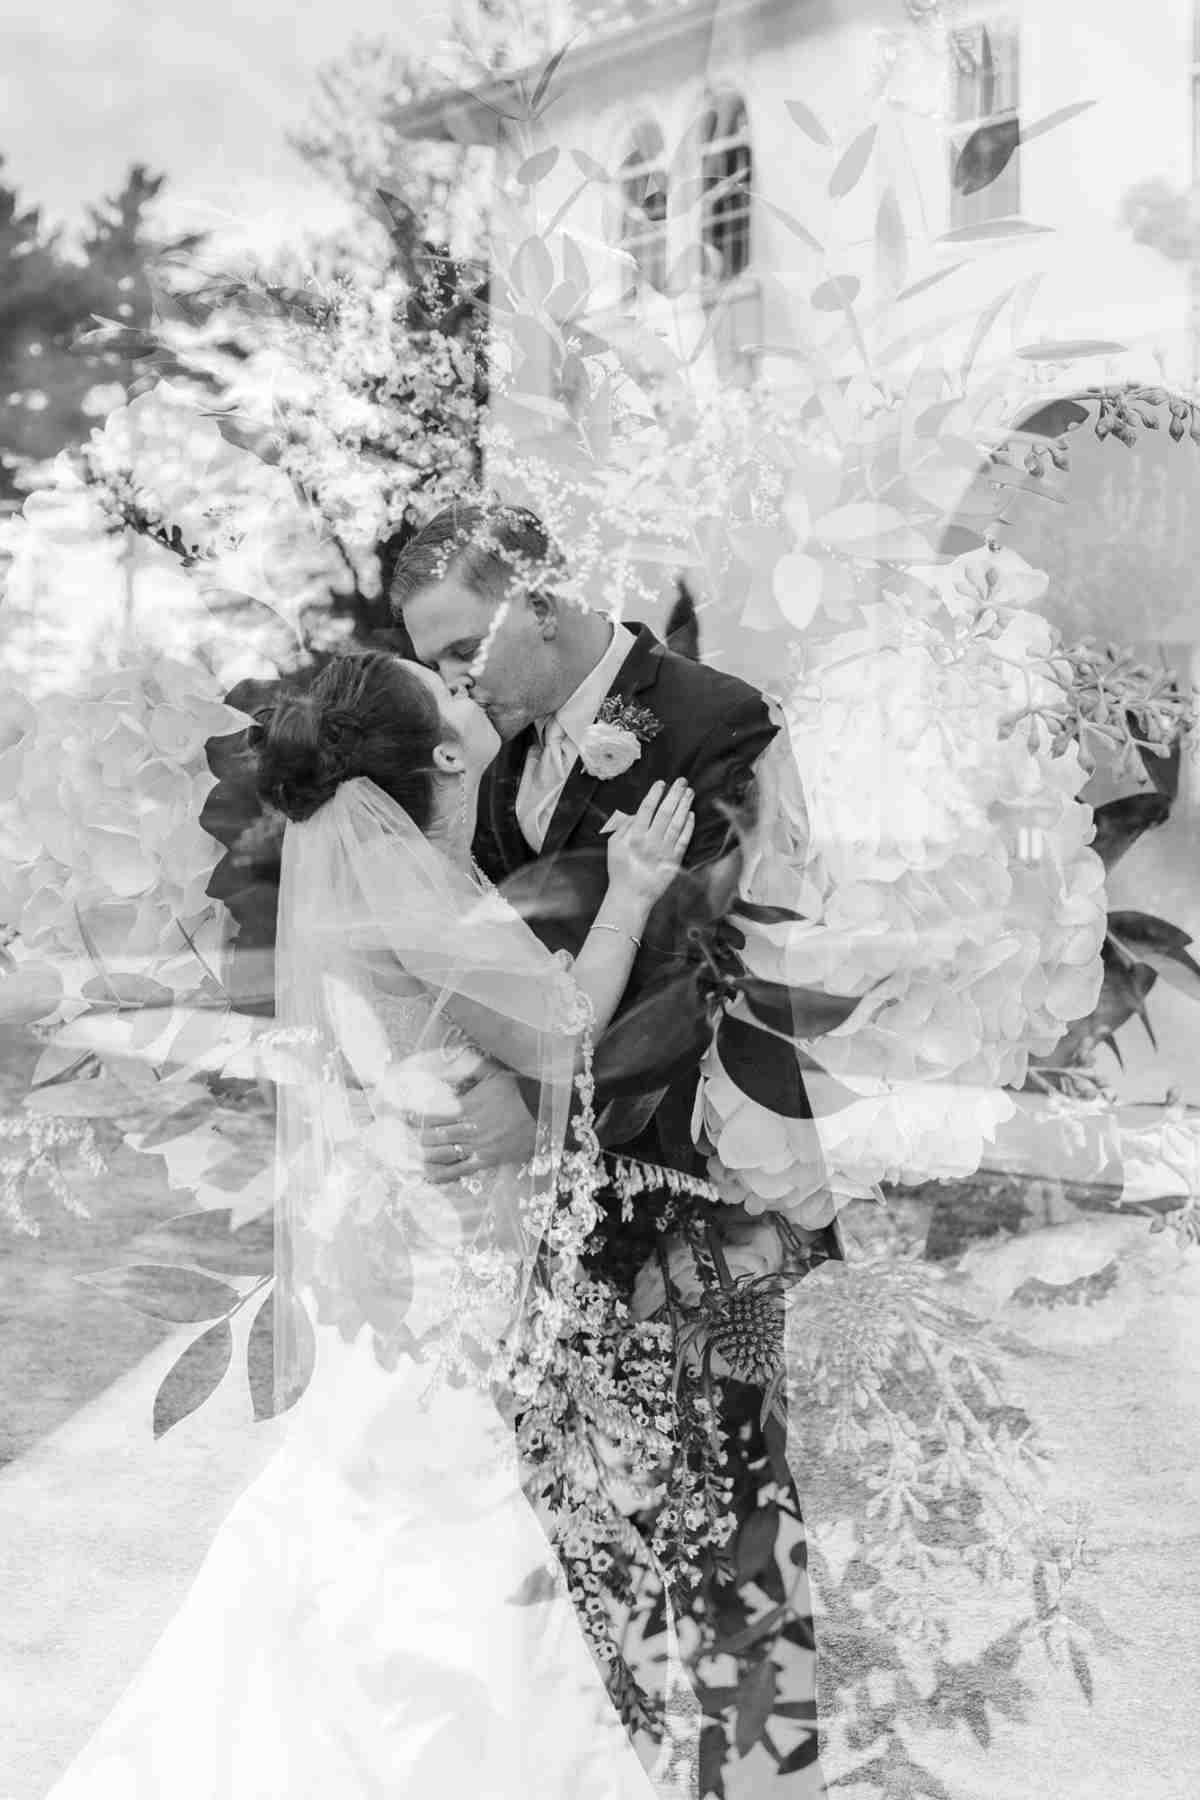 Fotos zur Hochzeit originell gestalten mit doppelter Belichtung in Schwarz-Weiß